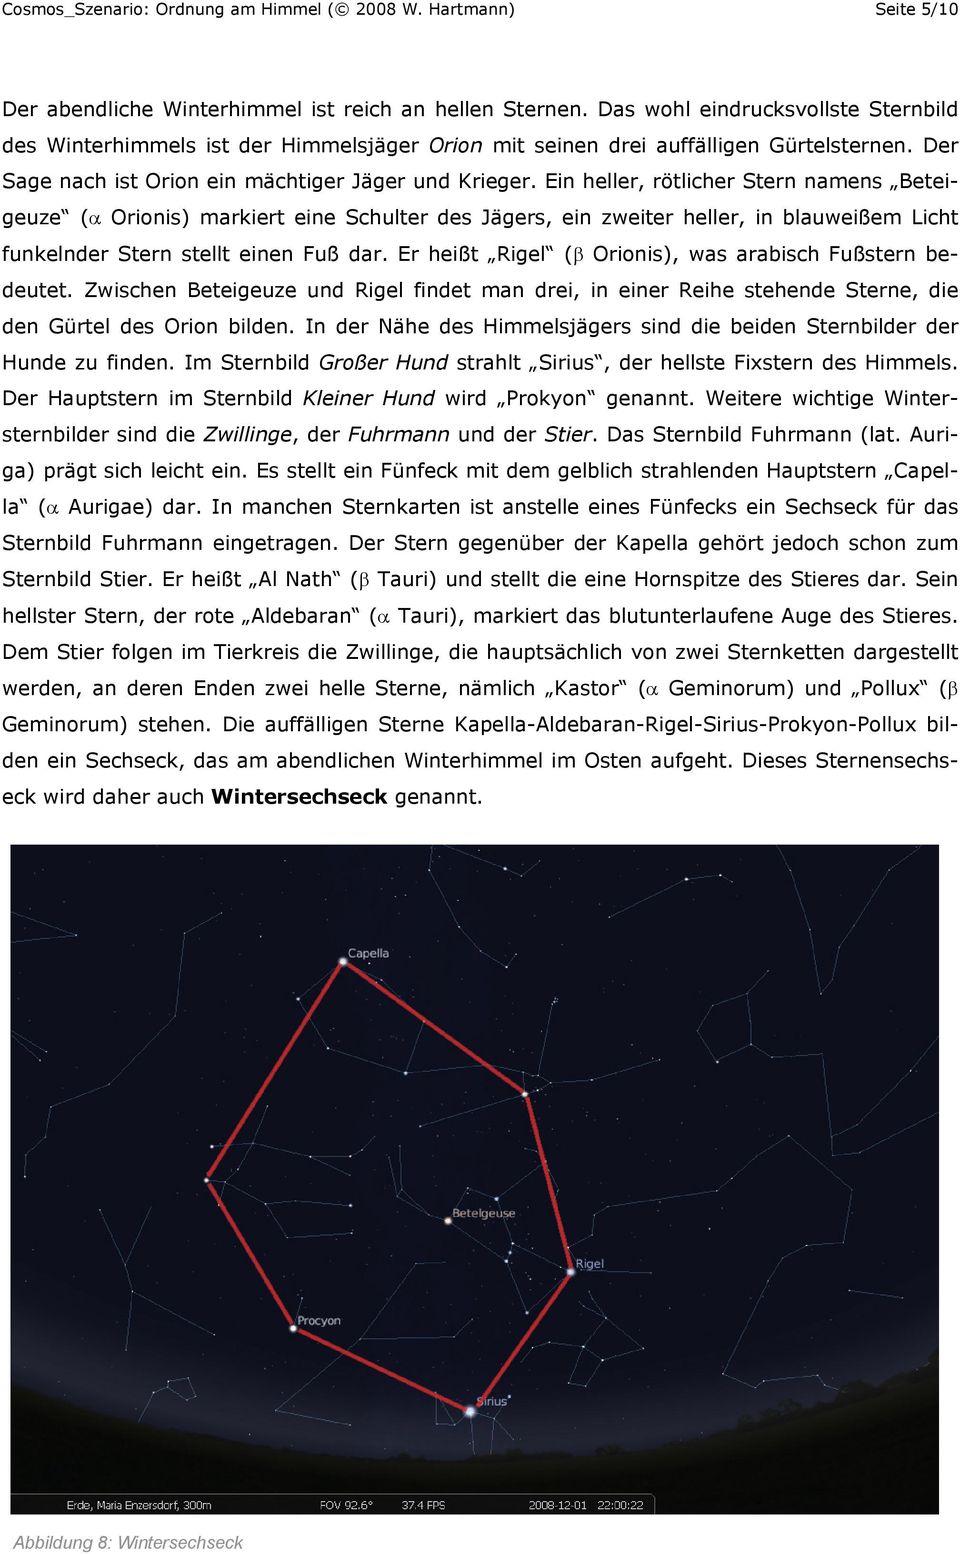 Ordnung Am Himmel Sternbilder Pdf Free Download